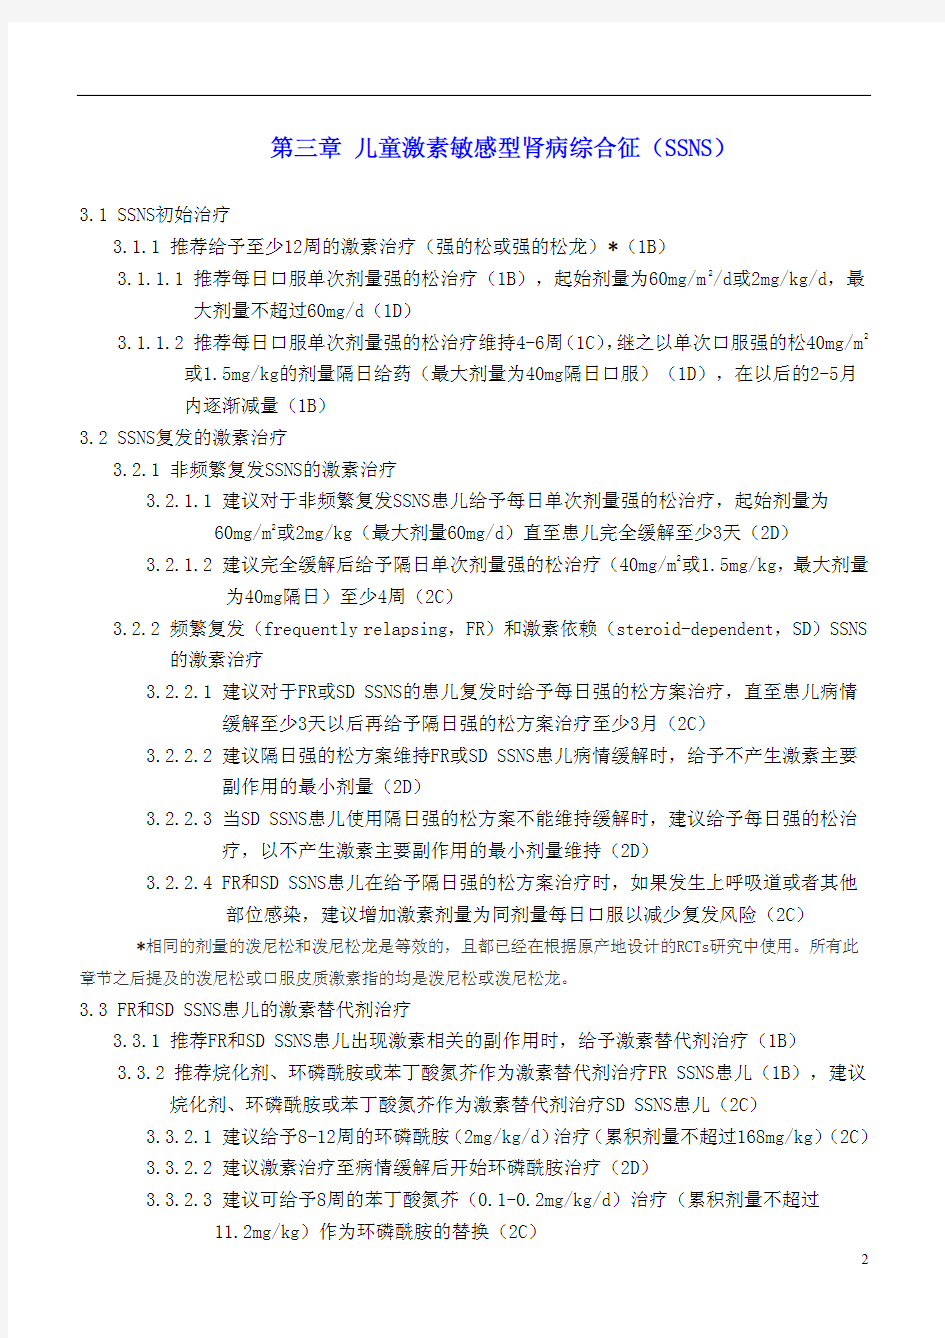 KDIGO肾小球肾炎的临床实践指南2012中文版120620